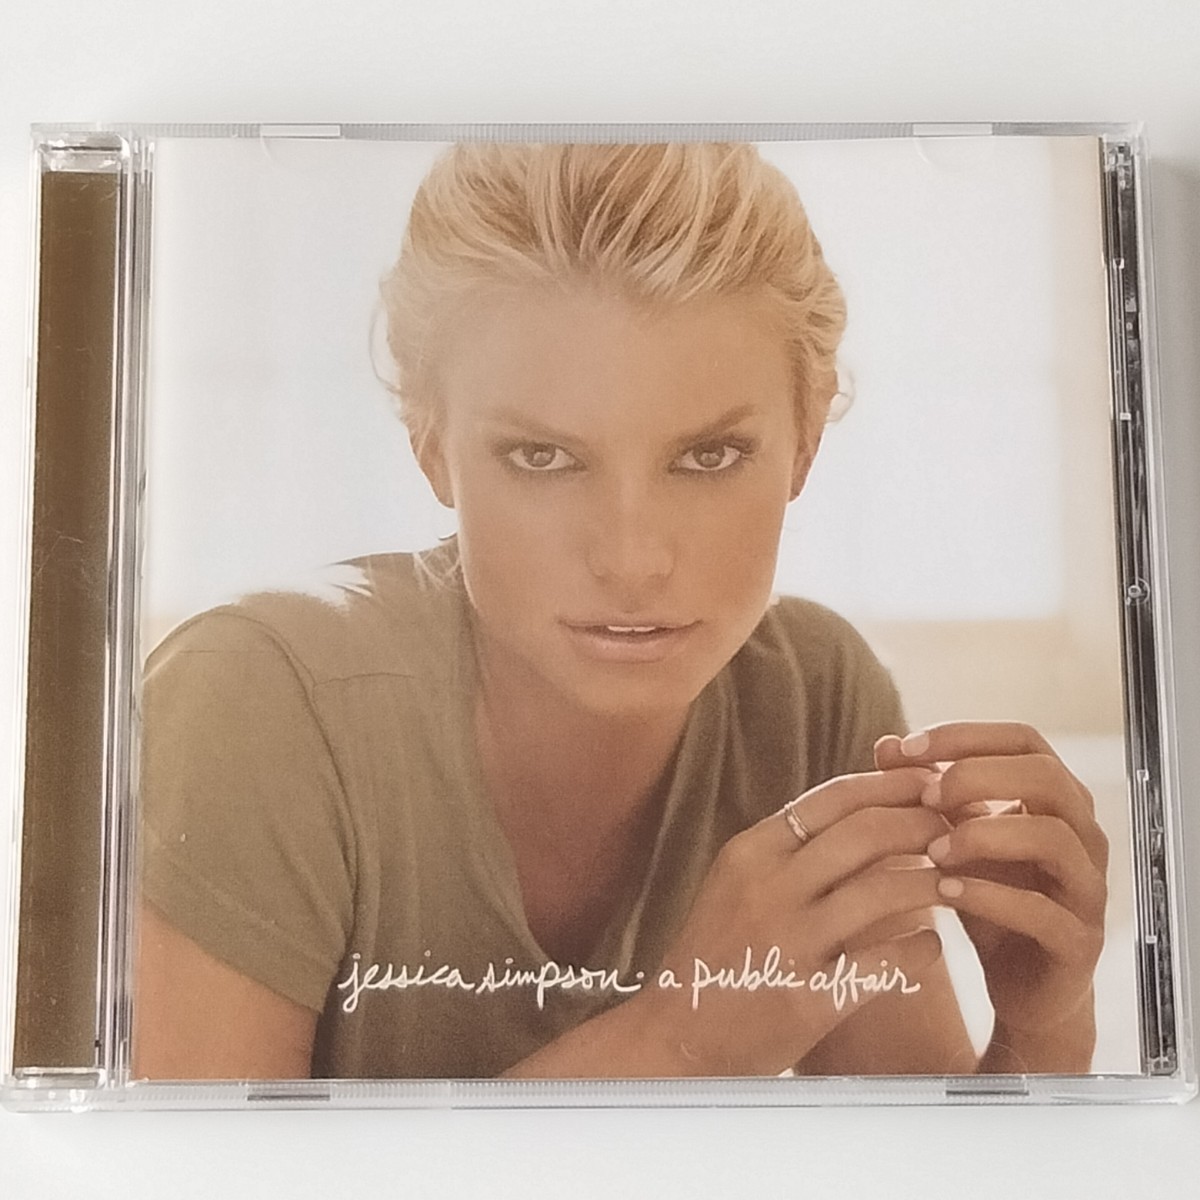 【輸入盤CD】JESSICA SIMPSON / A PUBLIC AFFAIR (82876832152) ジェシカ・シンプソン / ア・パブリック・アフェア 2006年4thアルバム_画像1